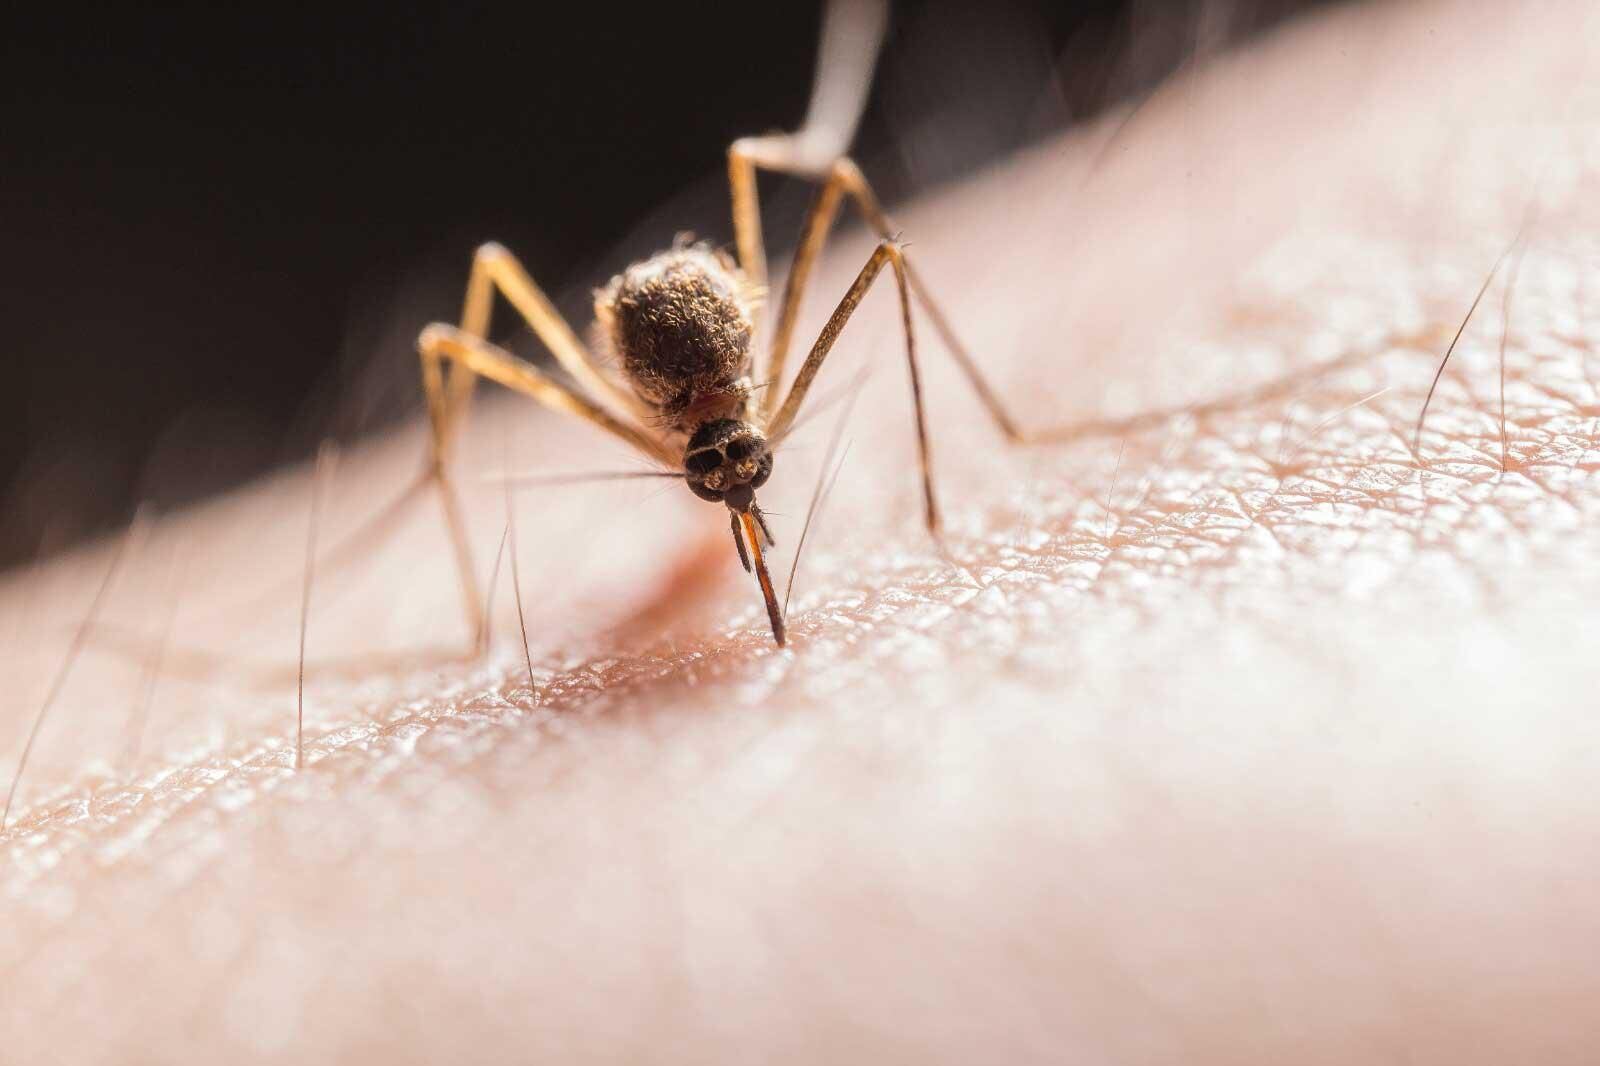 todos han cursado una enfermedad leve: el perfil de los 179 casos de dengue tras hallazgo de nuevo foco en los andes